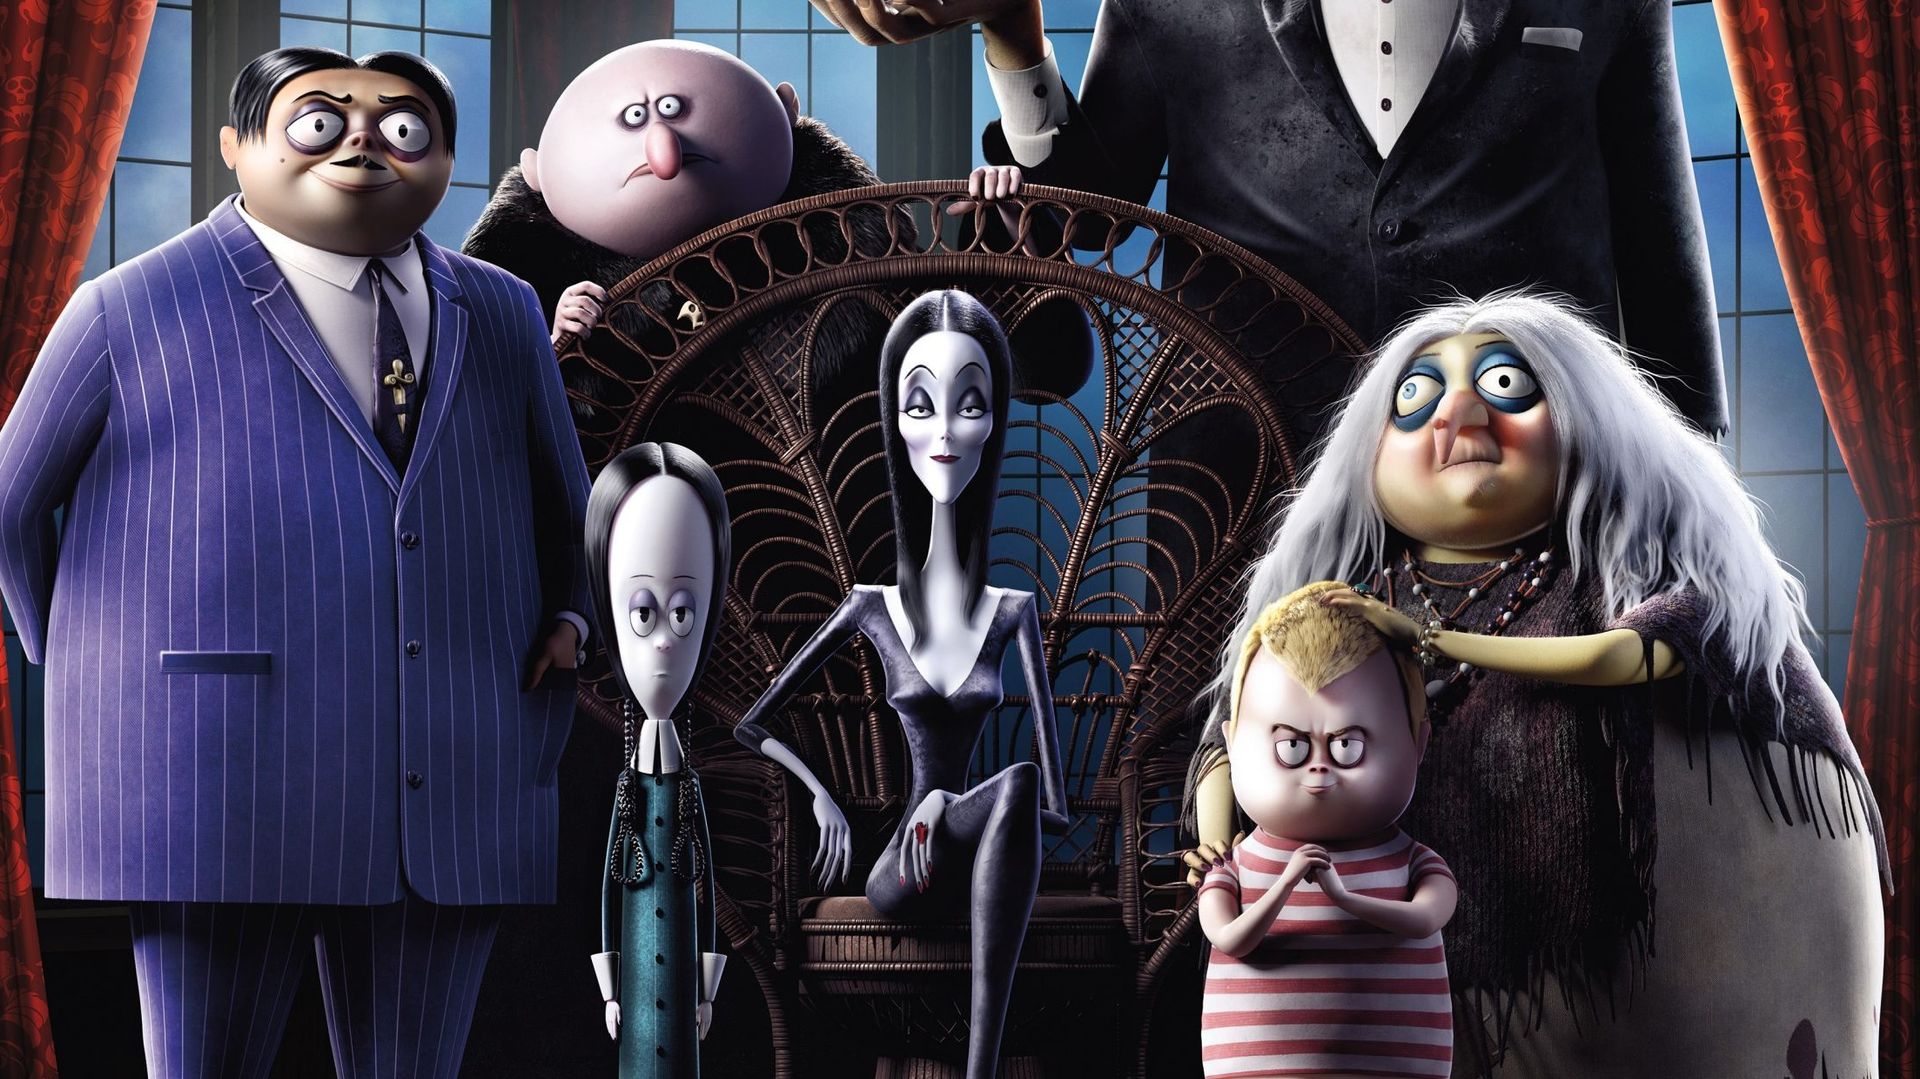 "La Famille Addams" sortira le 4 décembre prochain.